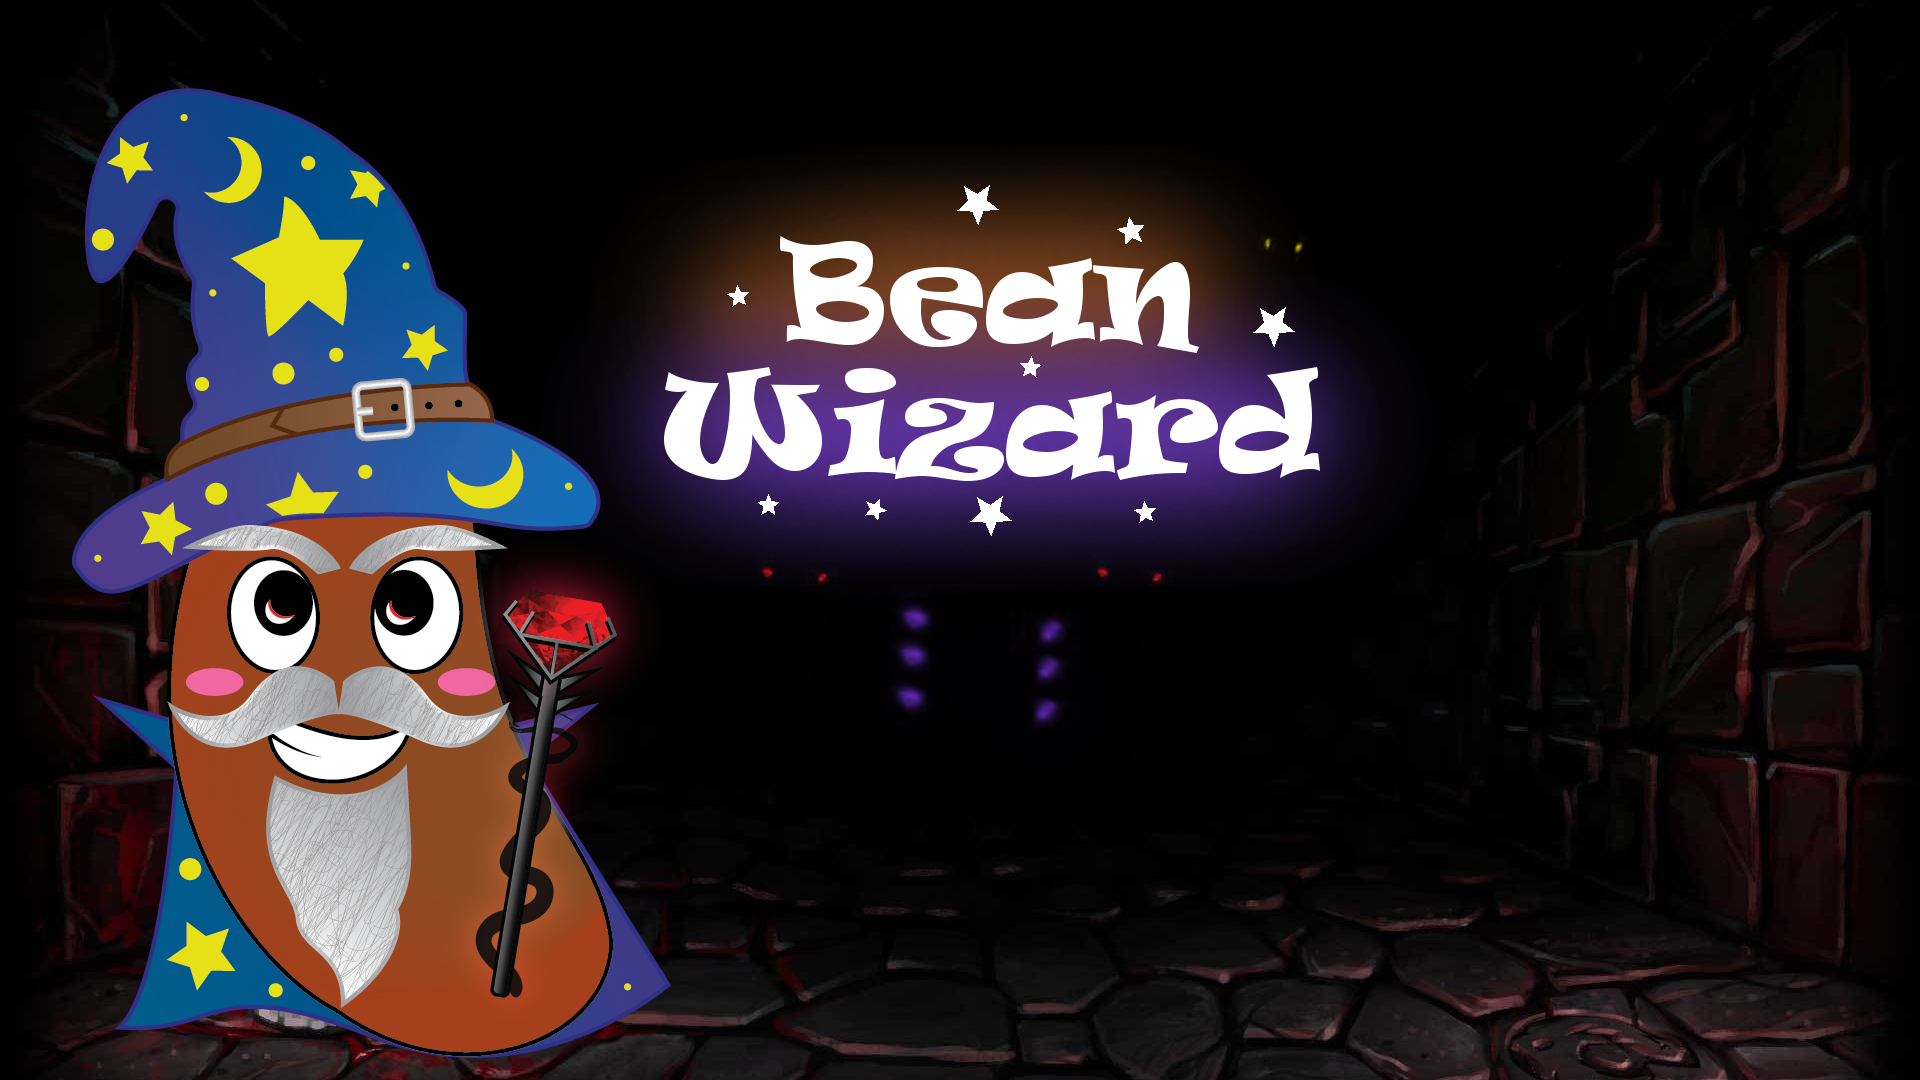 Bean Wizard